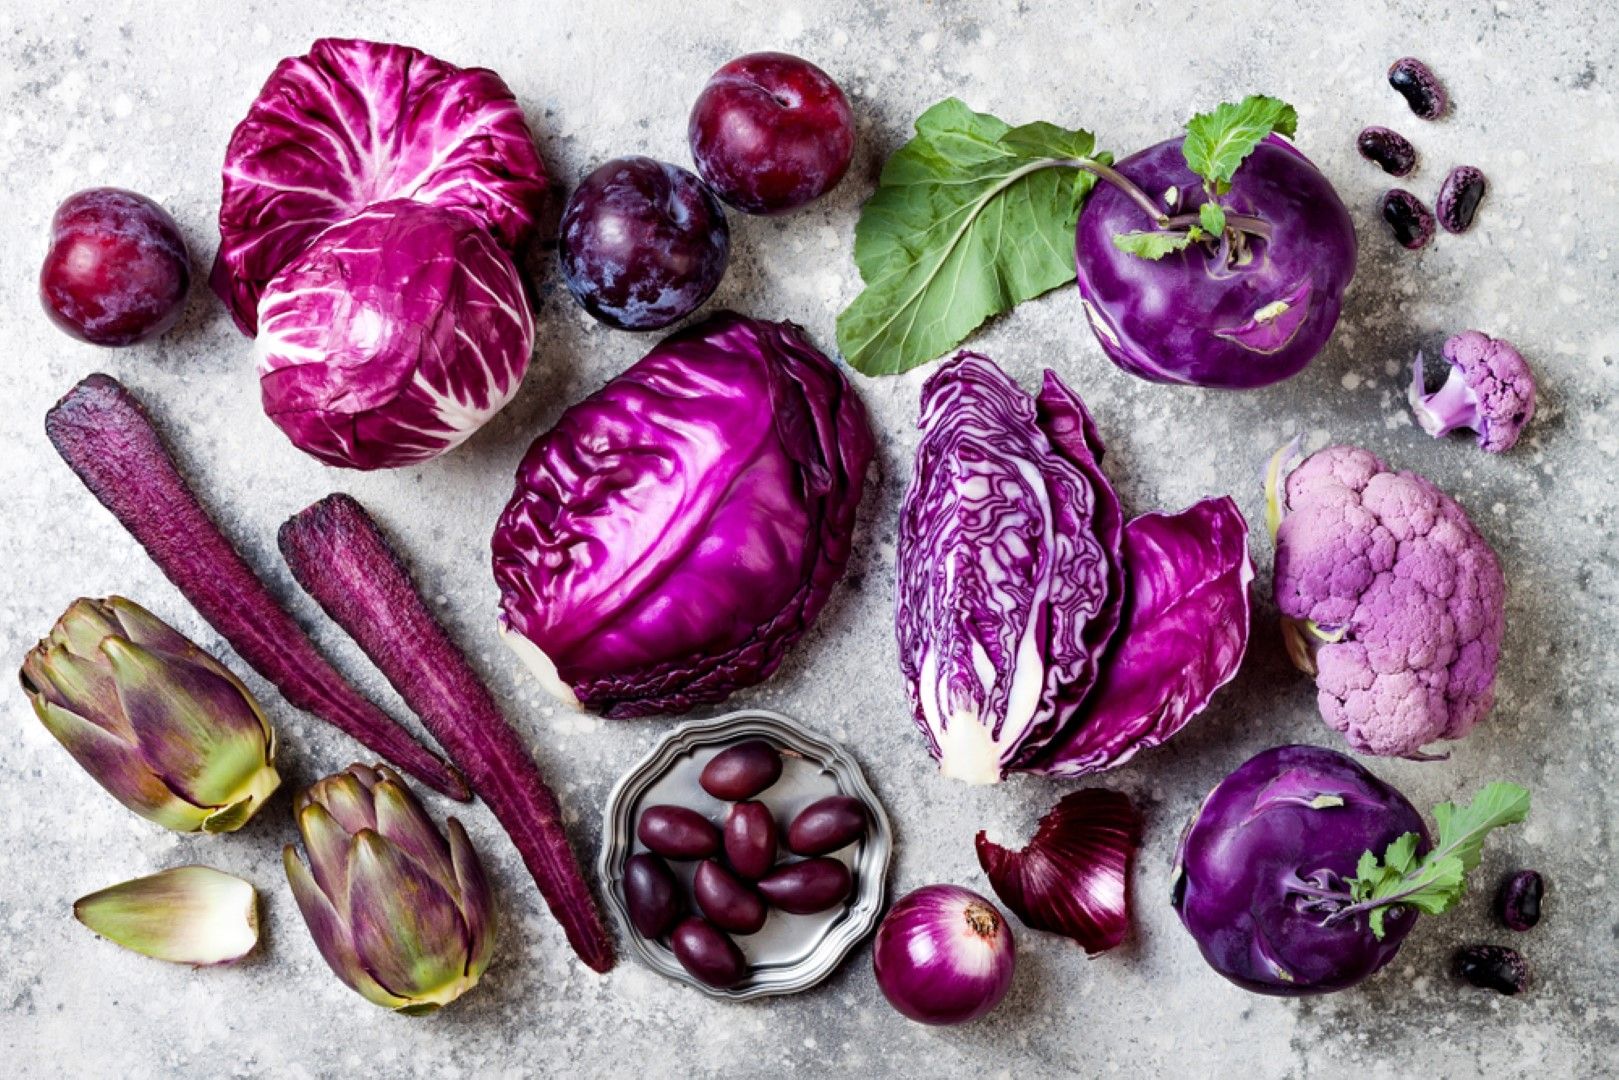 Пурпурните продукти дават енергия, сила и великолепно настроение през есента, сочат експерти